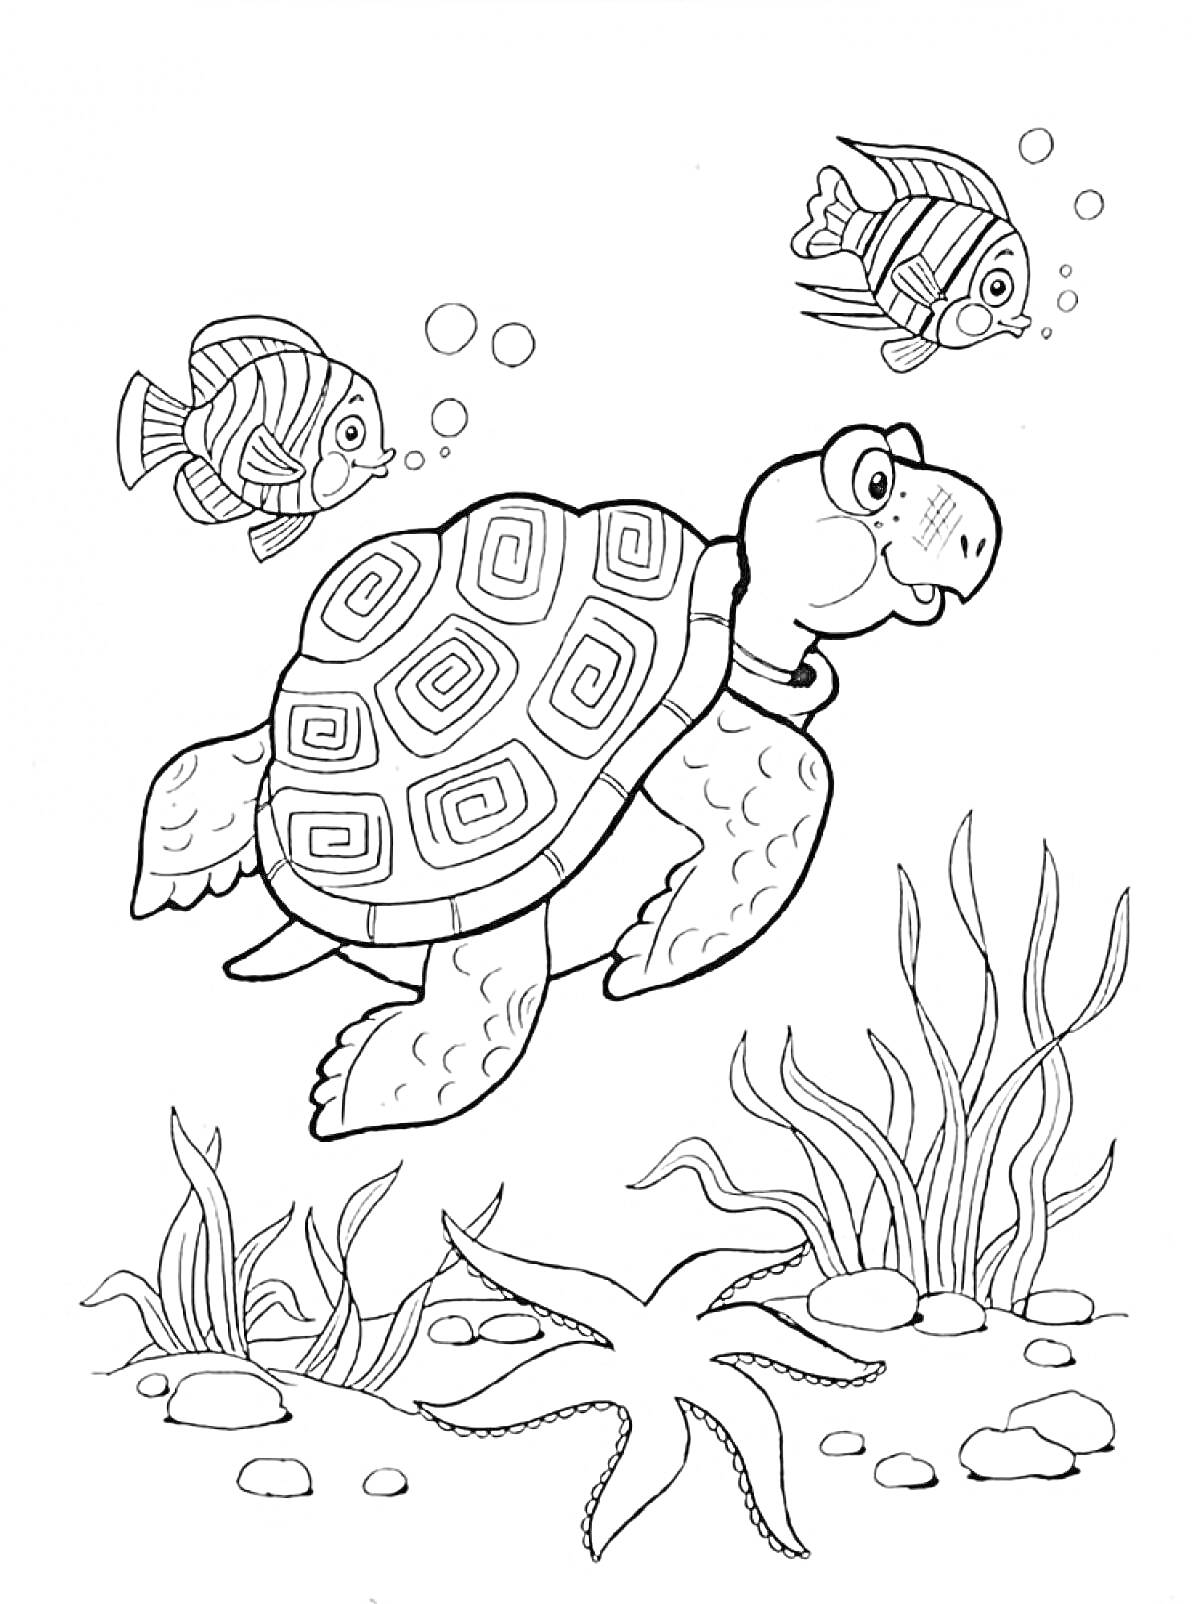 Морская черепаха, рыбы, водоросли и морская звезда